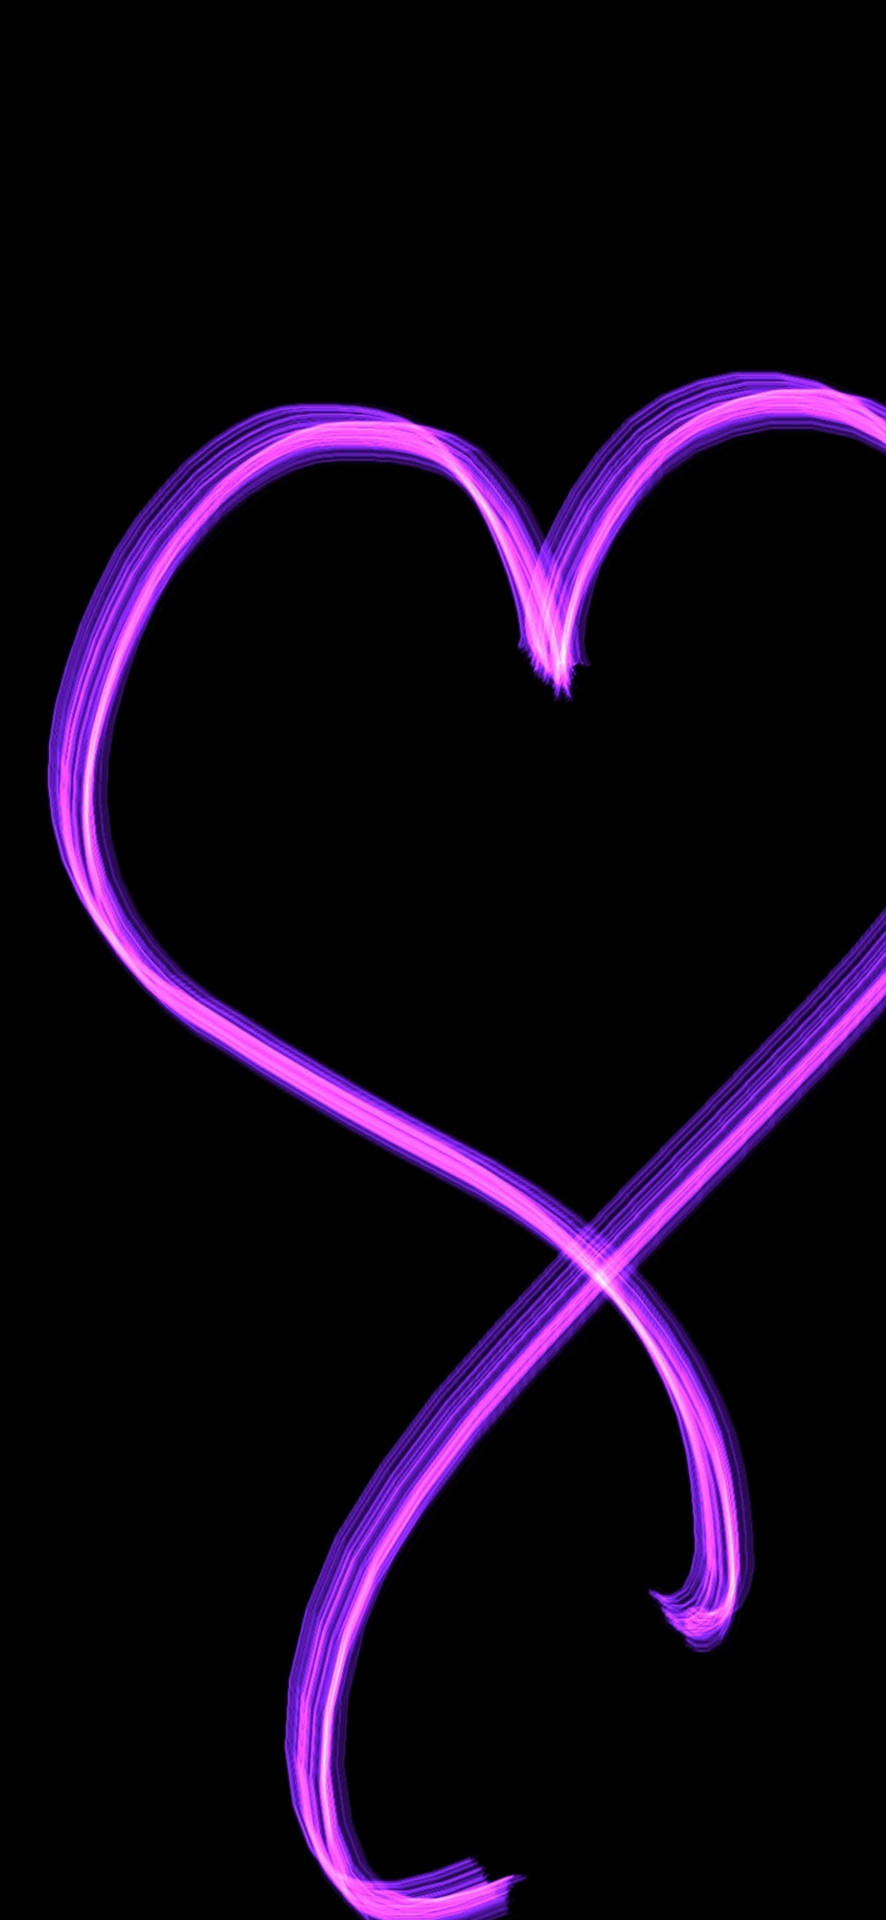 Dark Girly Hearts Heart  Purple  Purple heart Black and Purple Heart HD  wallpaper  Pxfuel